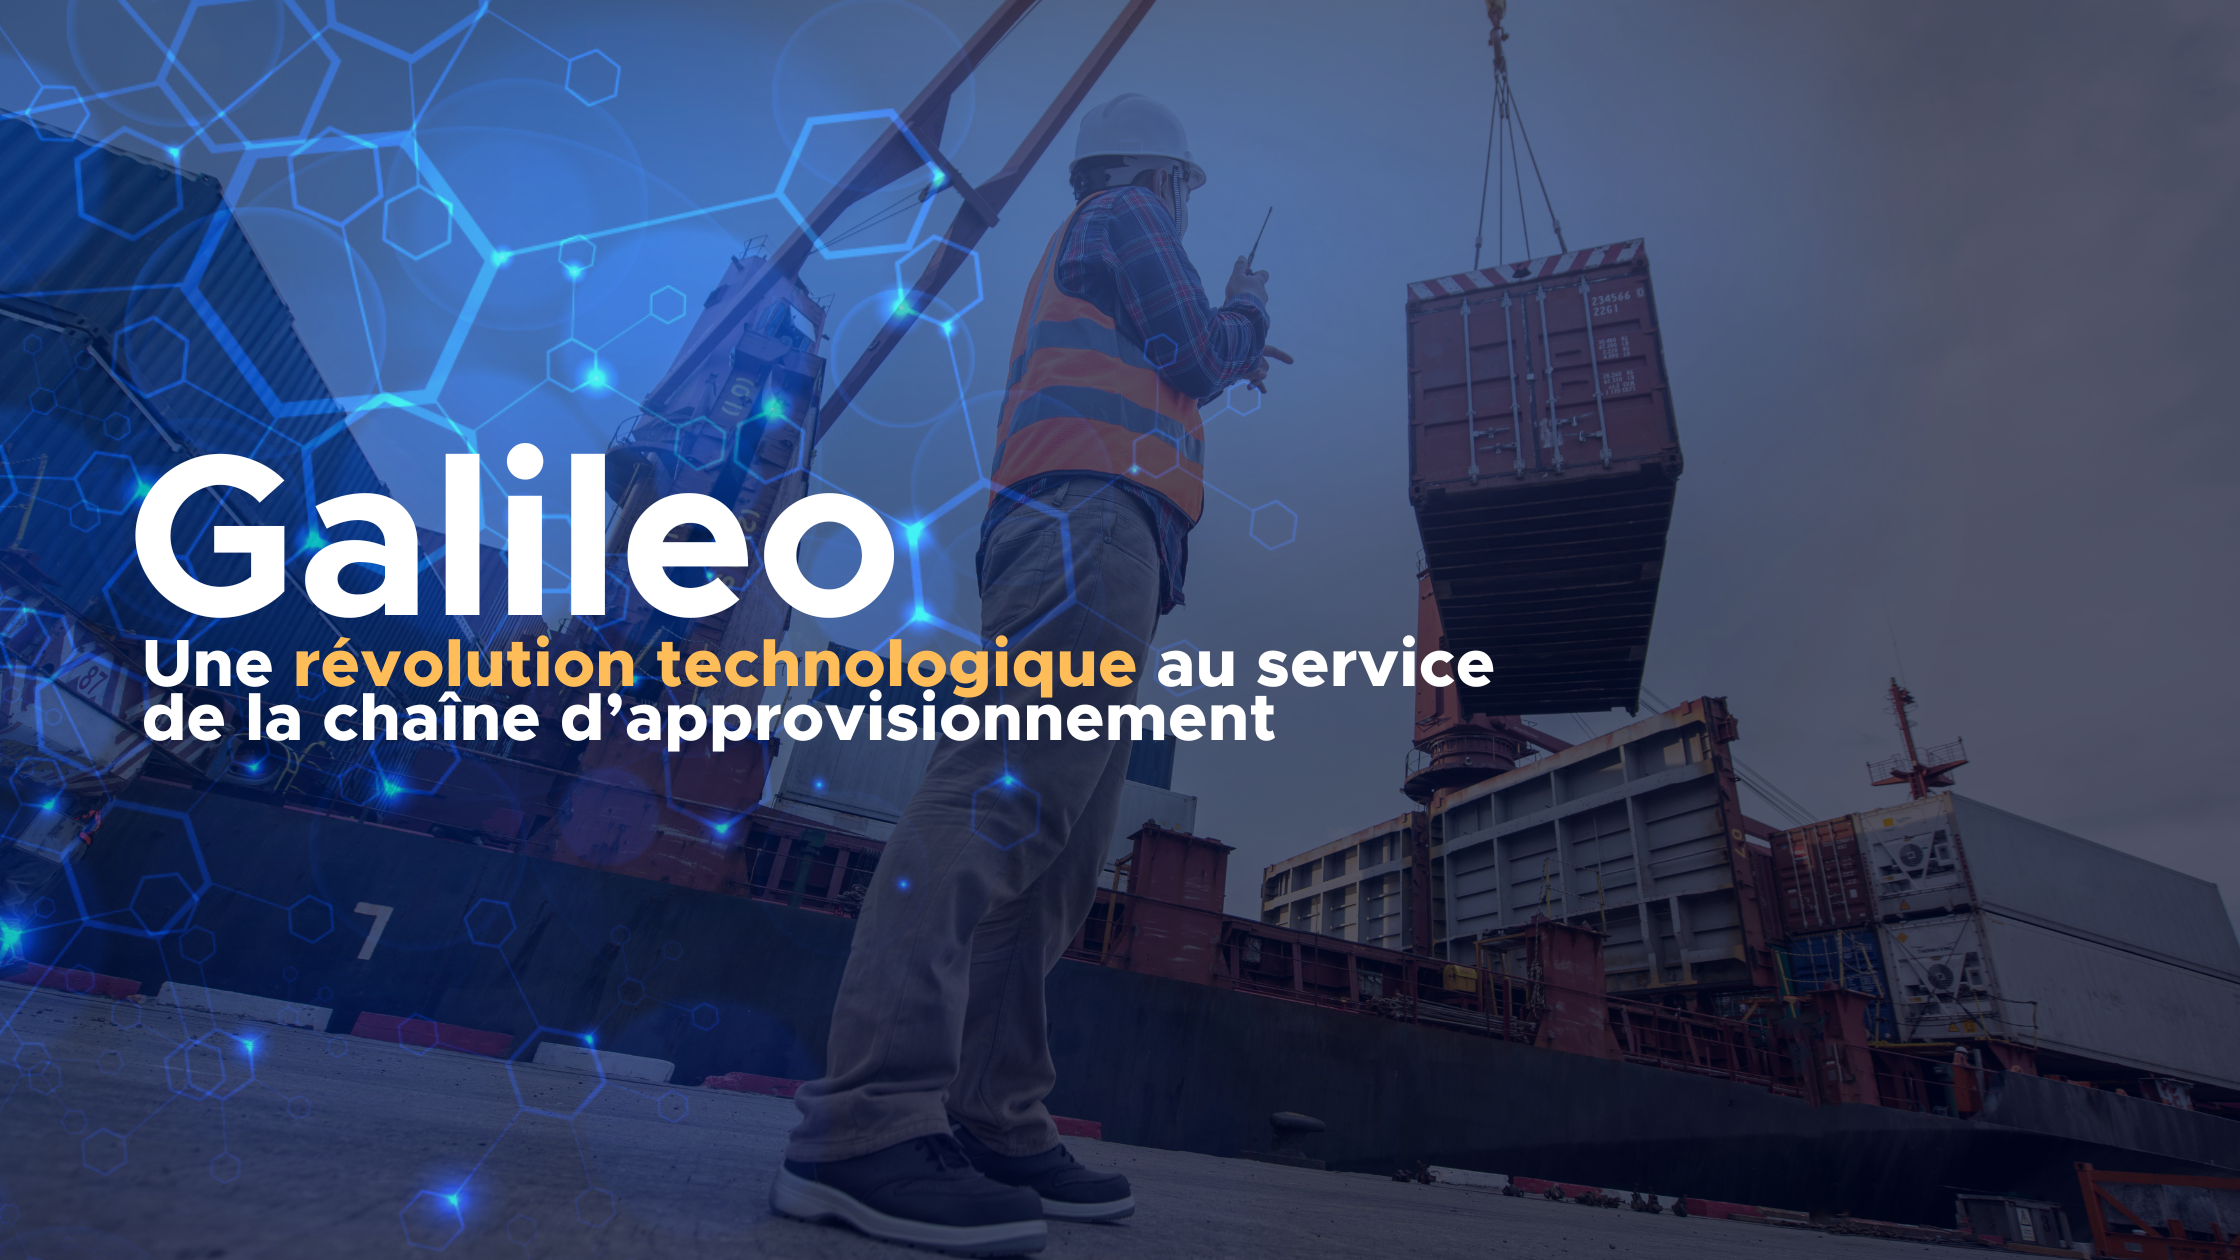 Galileo : une révolution technologique au service de la chaîne d’approvisionnement